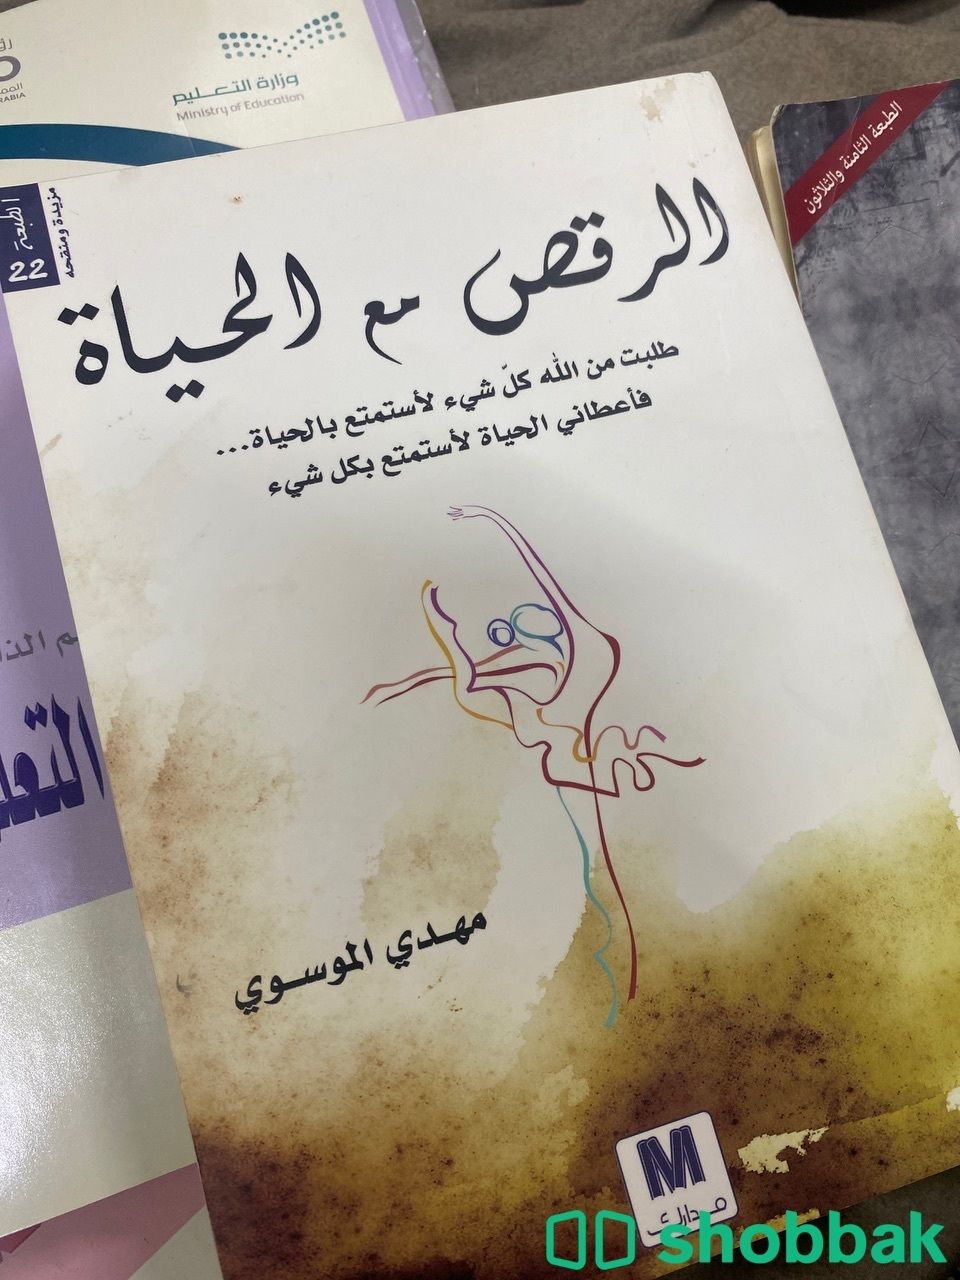 كتاب الرقص مع الحياه Shobbak Saudi Arabia